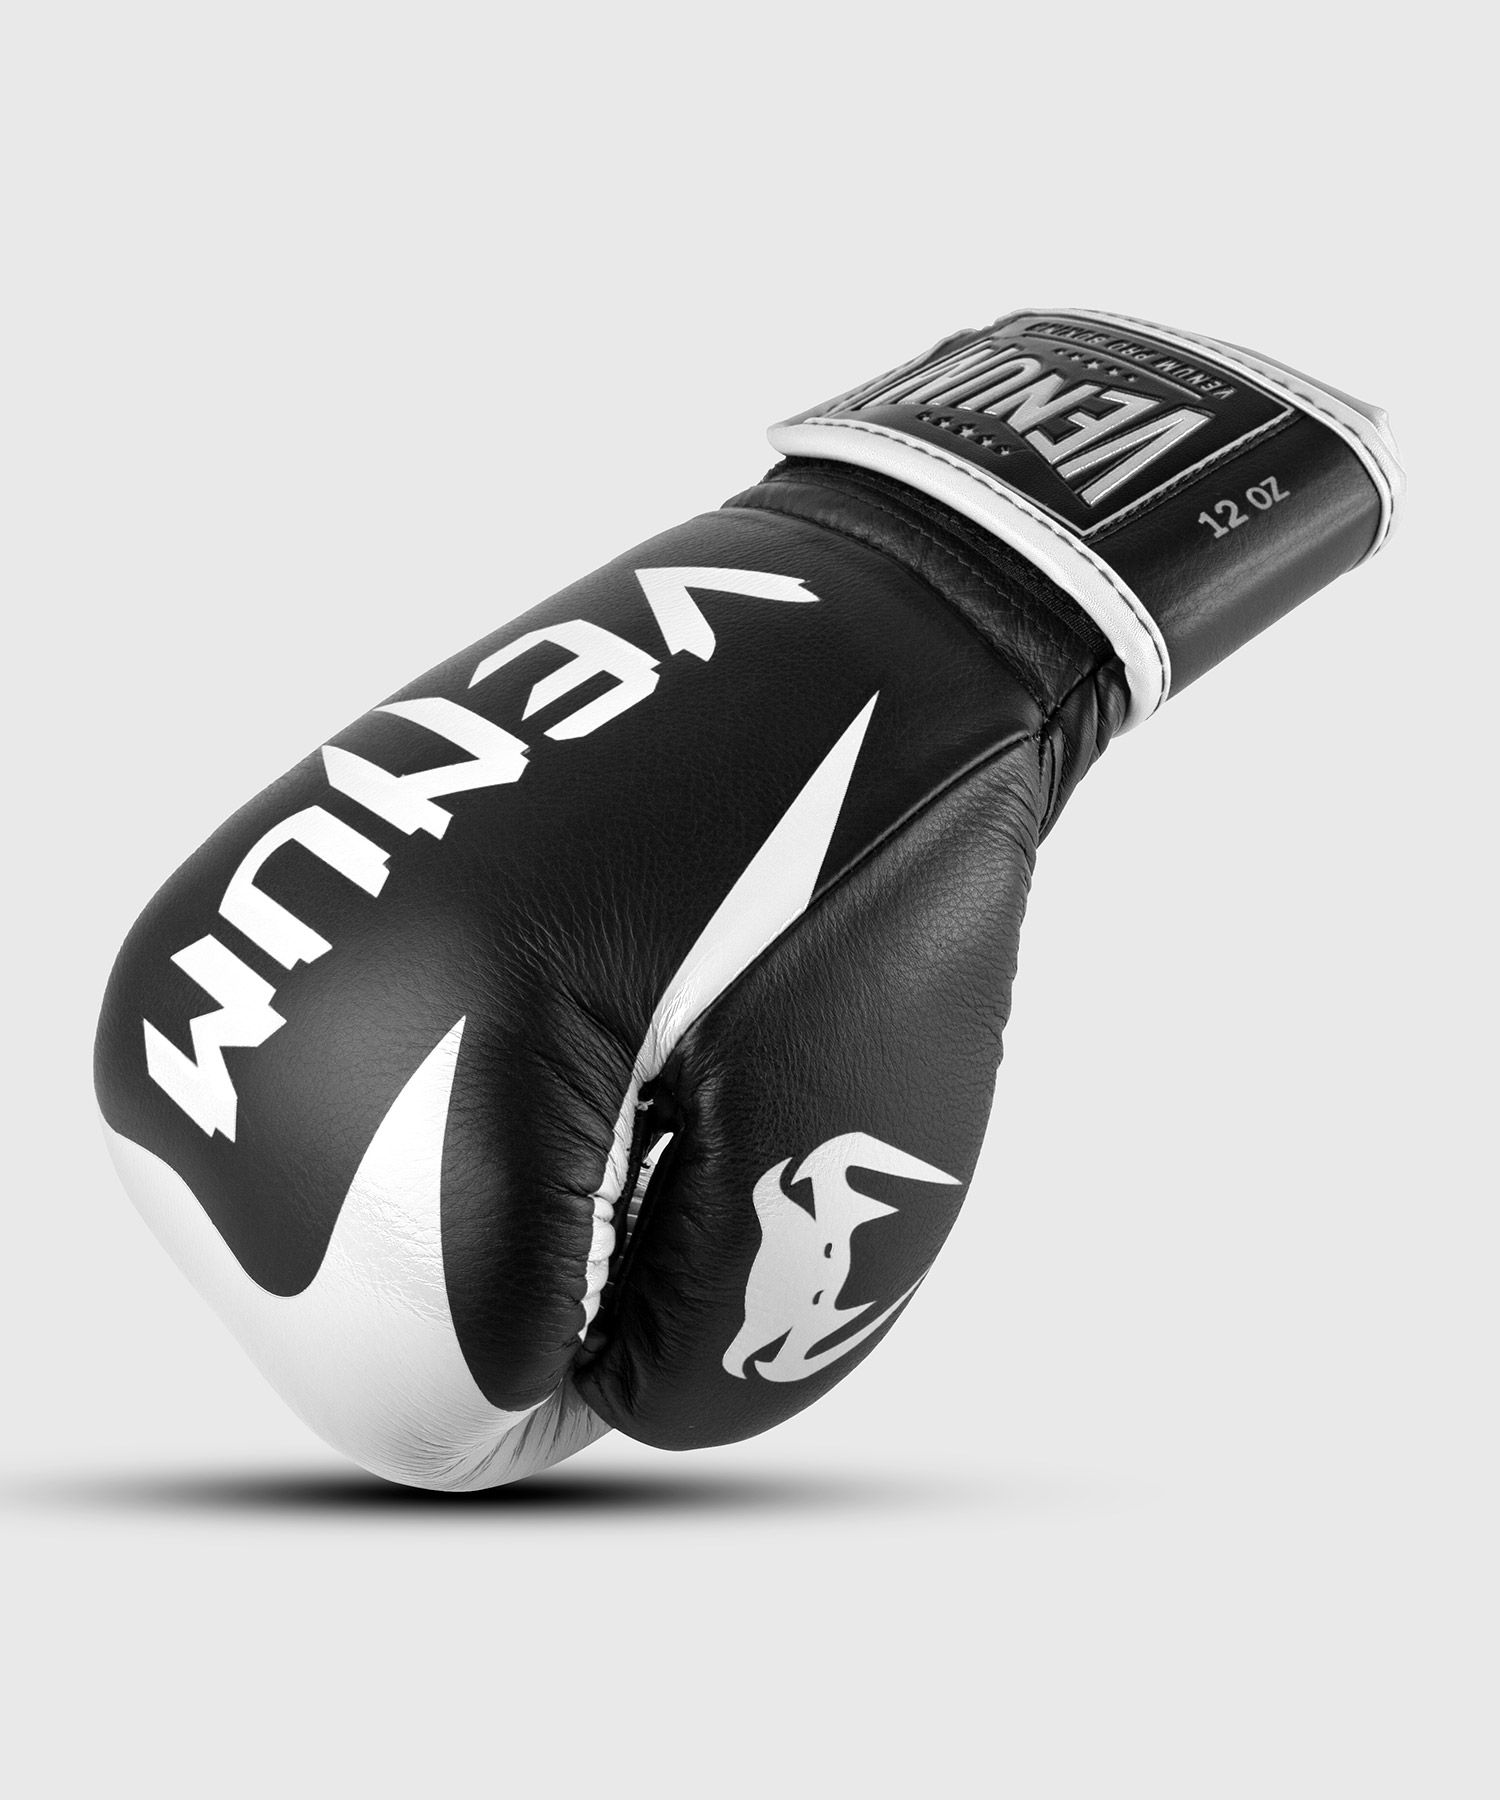 Gants de boxe pro Venum Hammer - Velcro - Noir/Blanc